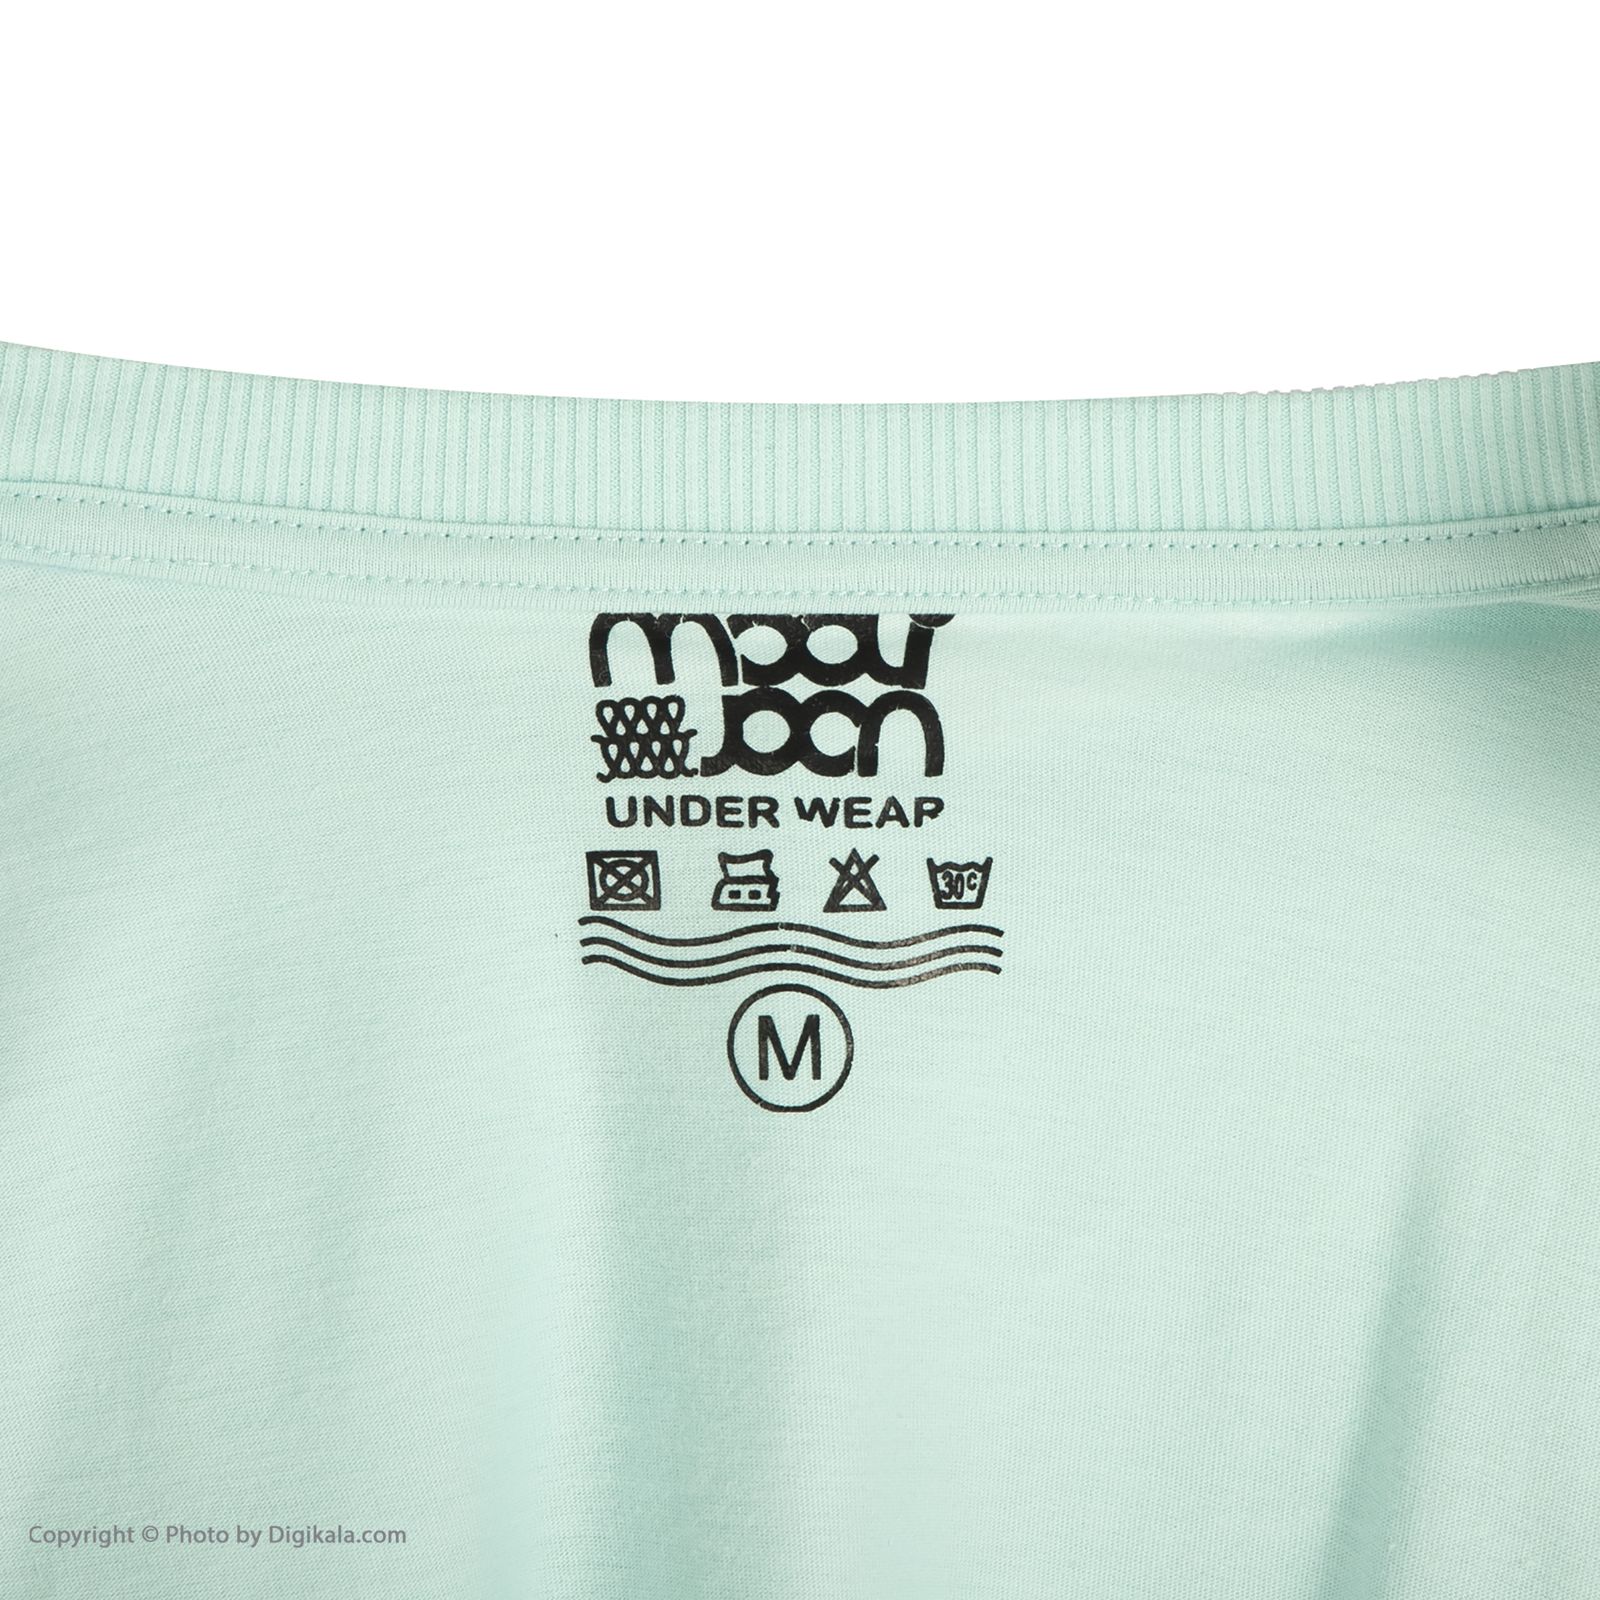 ست تی شرت و شلوار راحتی مردانه مولی جون مدل 2431101-5479 -  - 12